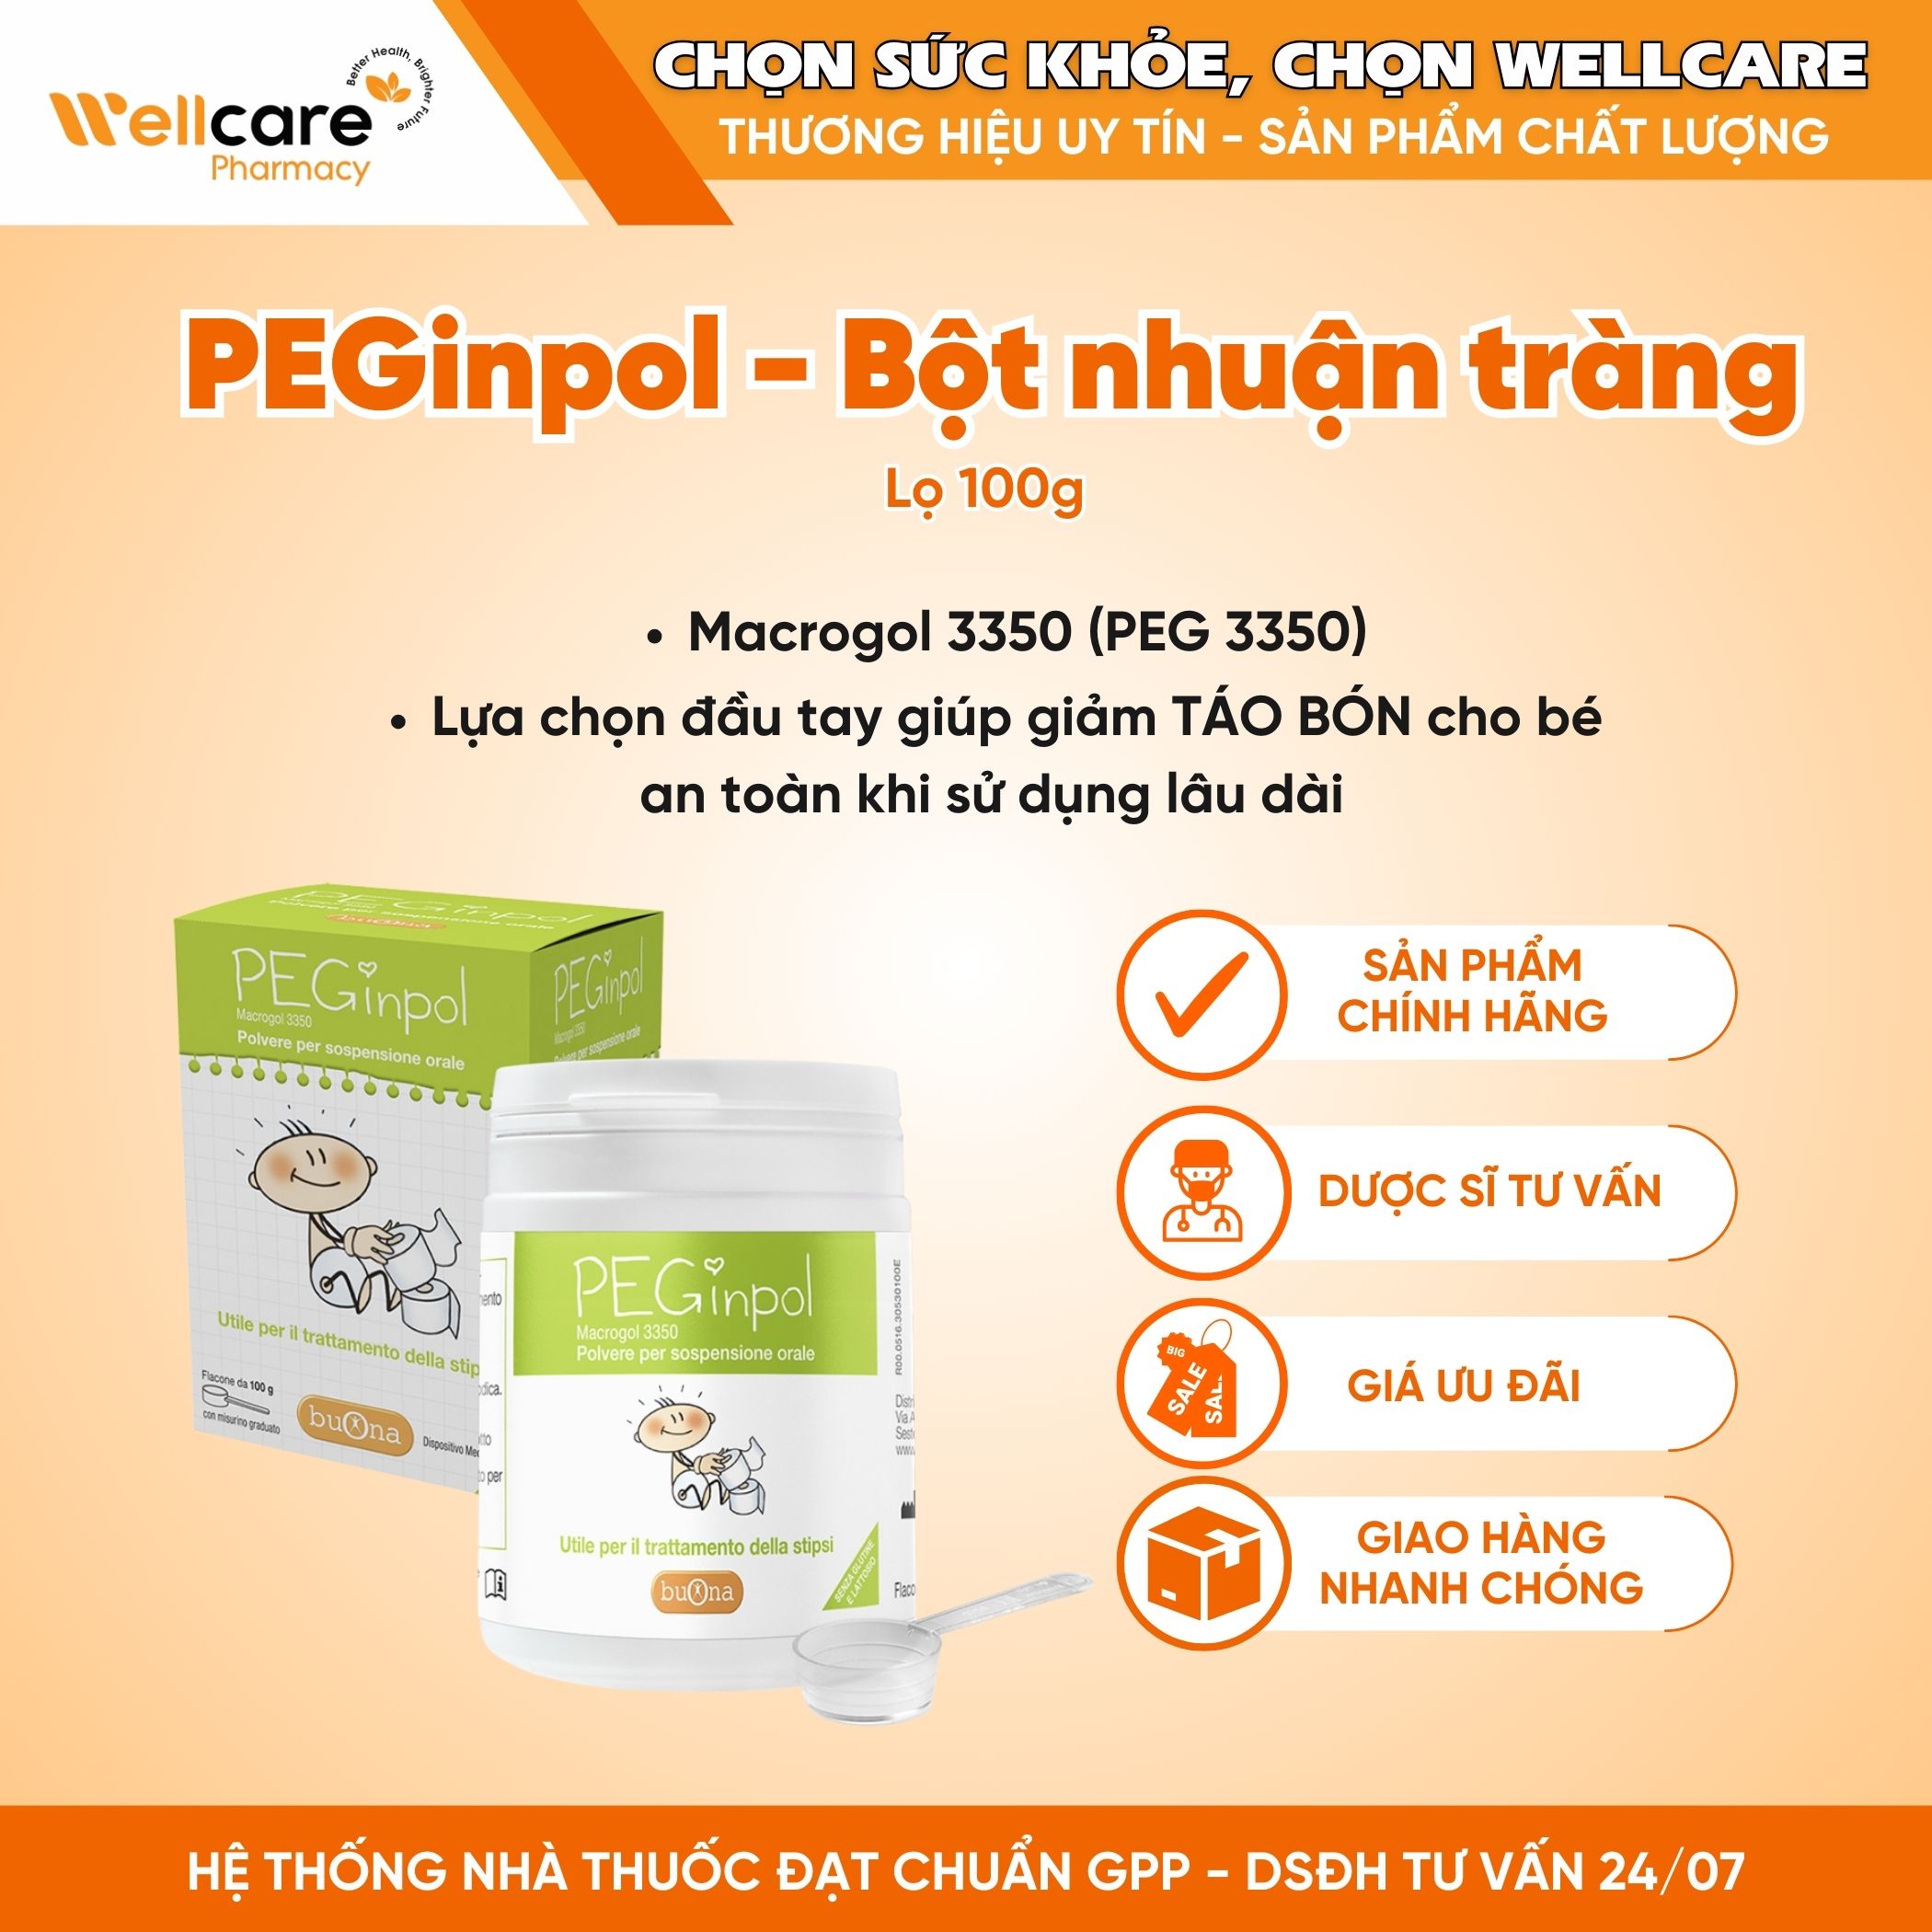 PEGinpol Buona – Bột pha hỗn dịch nhuận tràng cải thiện tình trạng táo bón cho trẻ ( Lọ 100g)